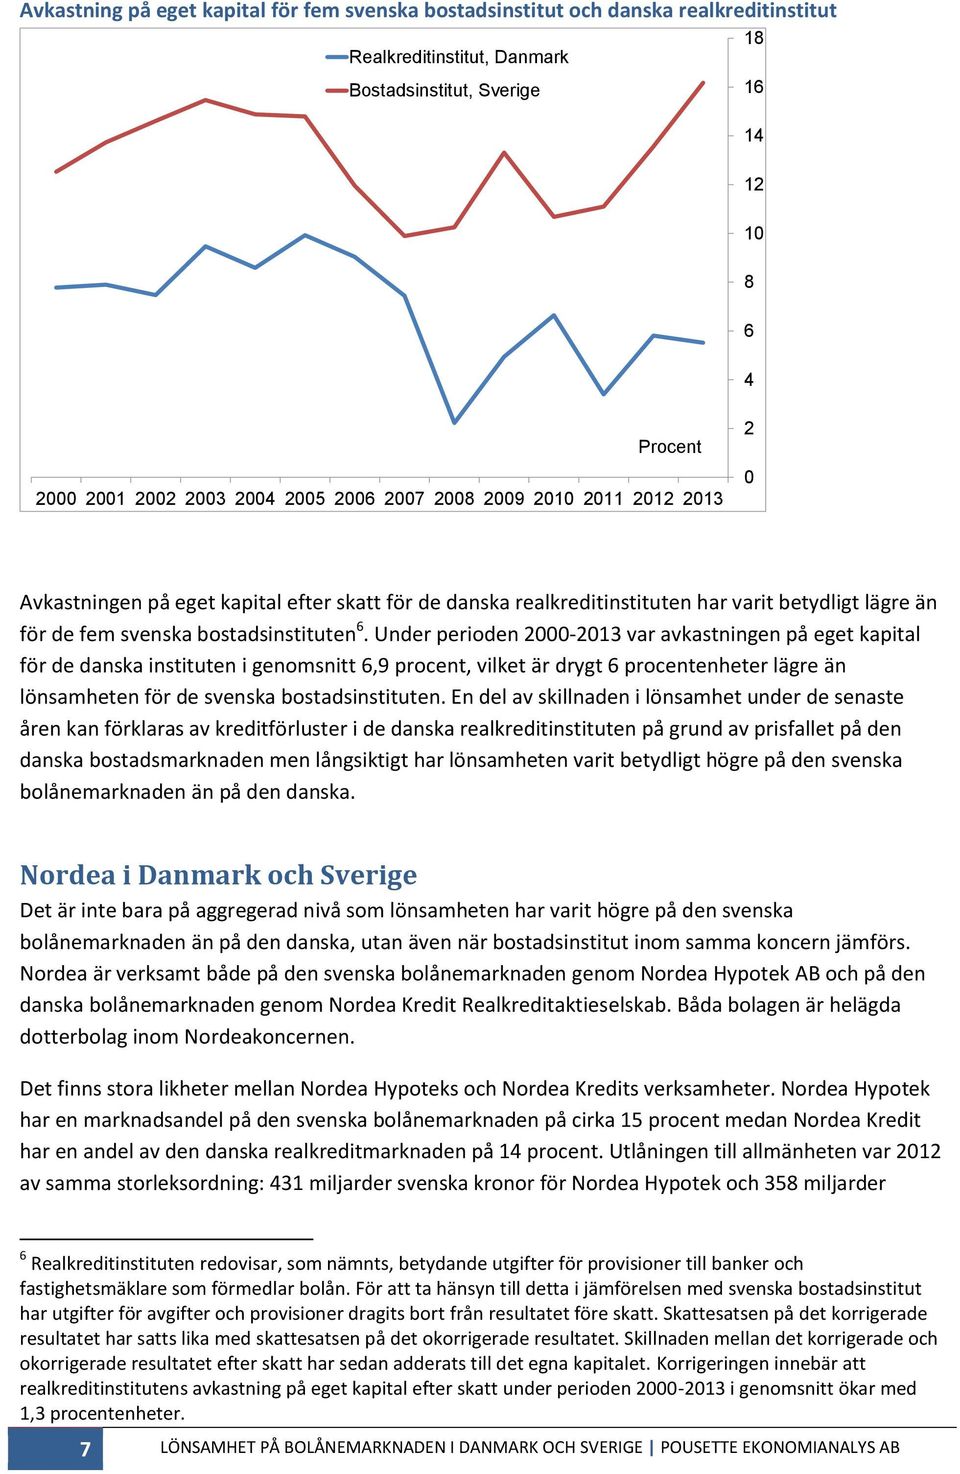 Under perioden 2000-2013 var avkastningen på eget kapital för de danska instituten i genomsnitt 6,9 procent, vilket är drygt 6 procentenheter lägre än lönsamheten för de svenska bostadsinstituten.